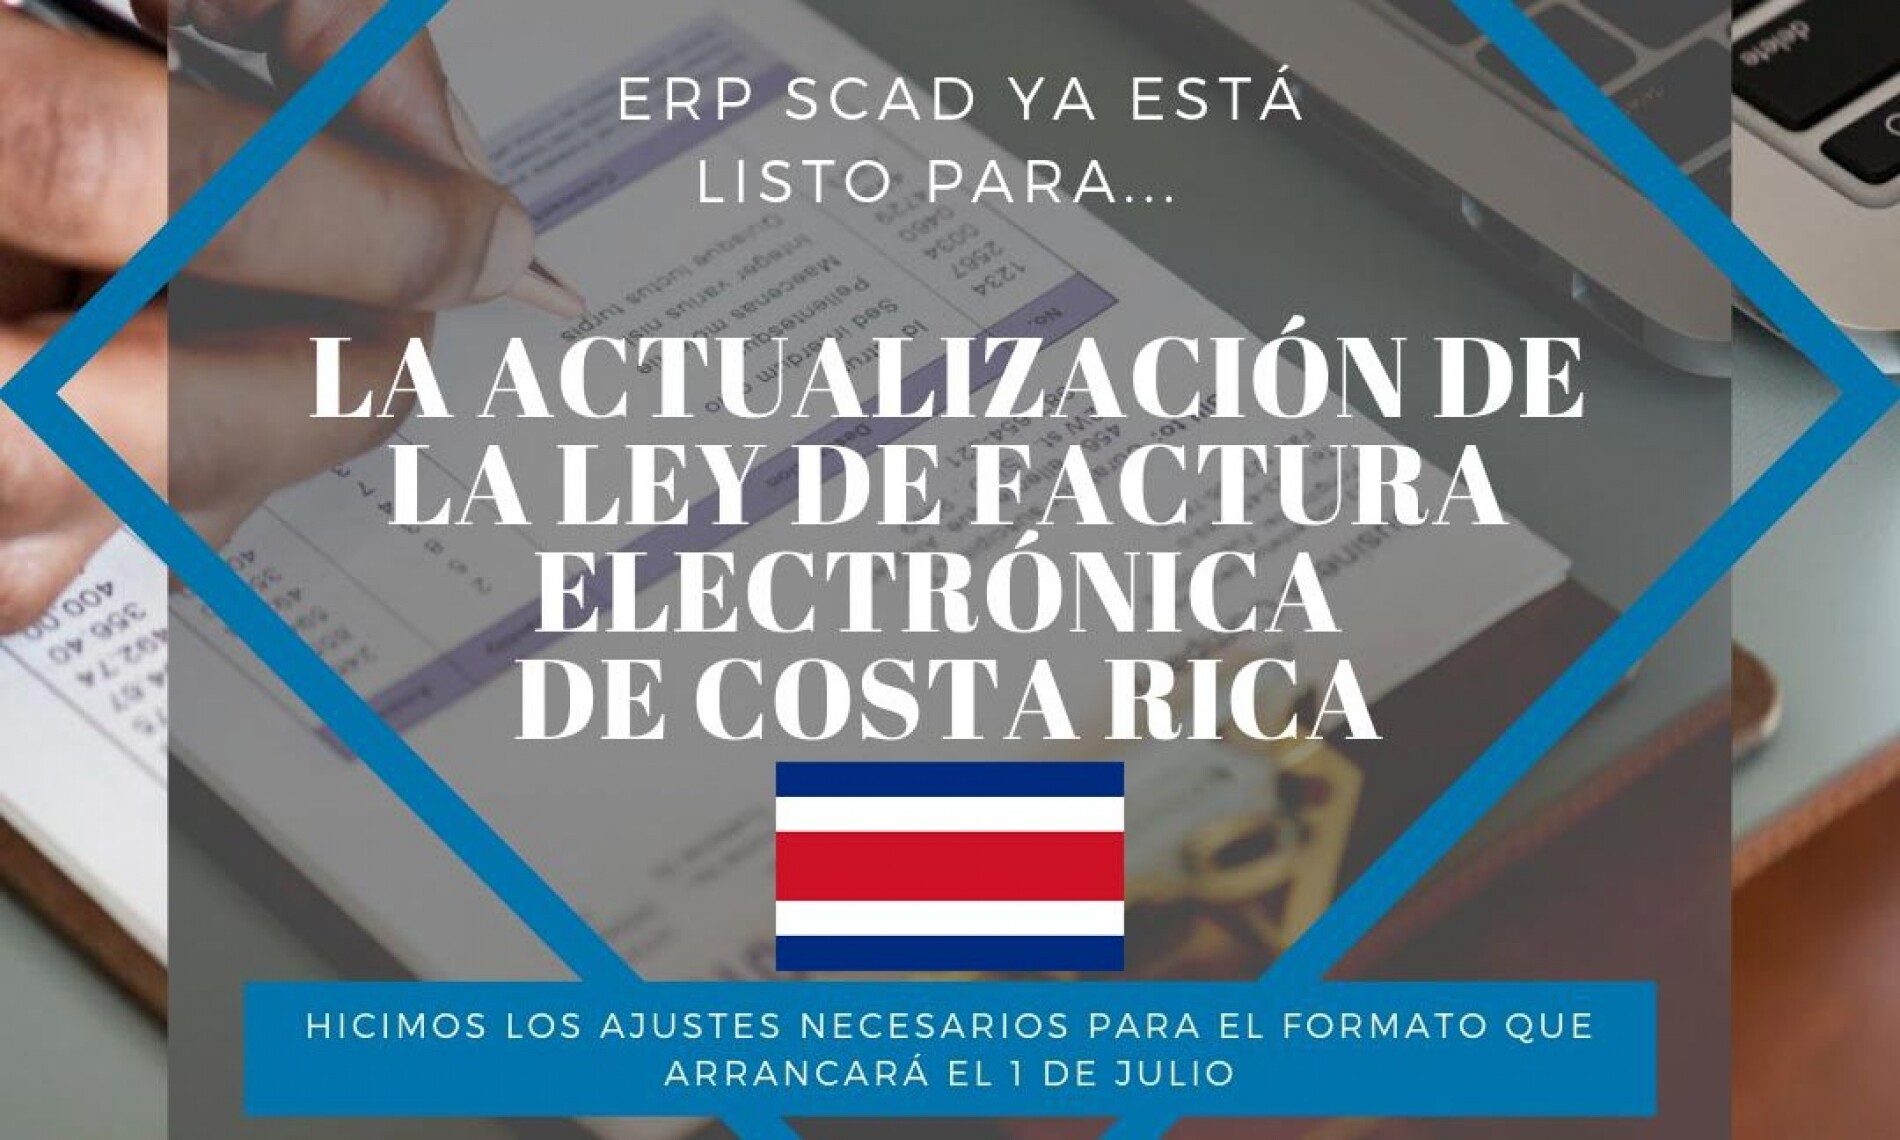 Costa Rica: ¡ERP SCAD Listo Para La Actualización De La Ley De Factura Electrónica!